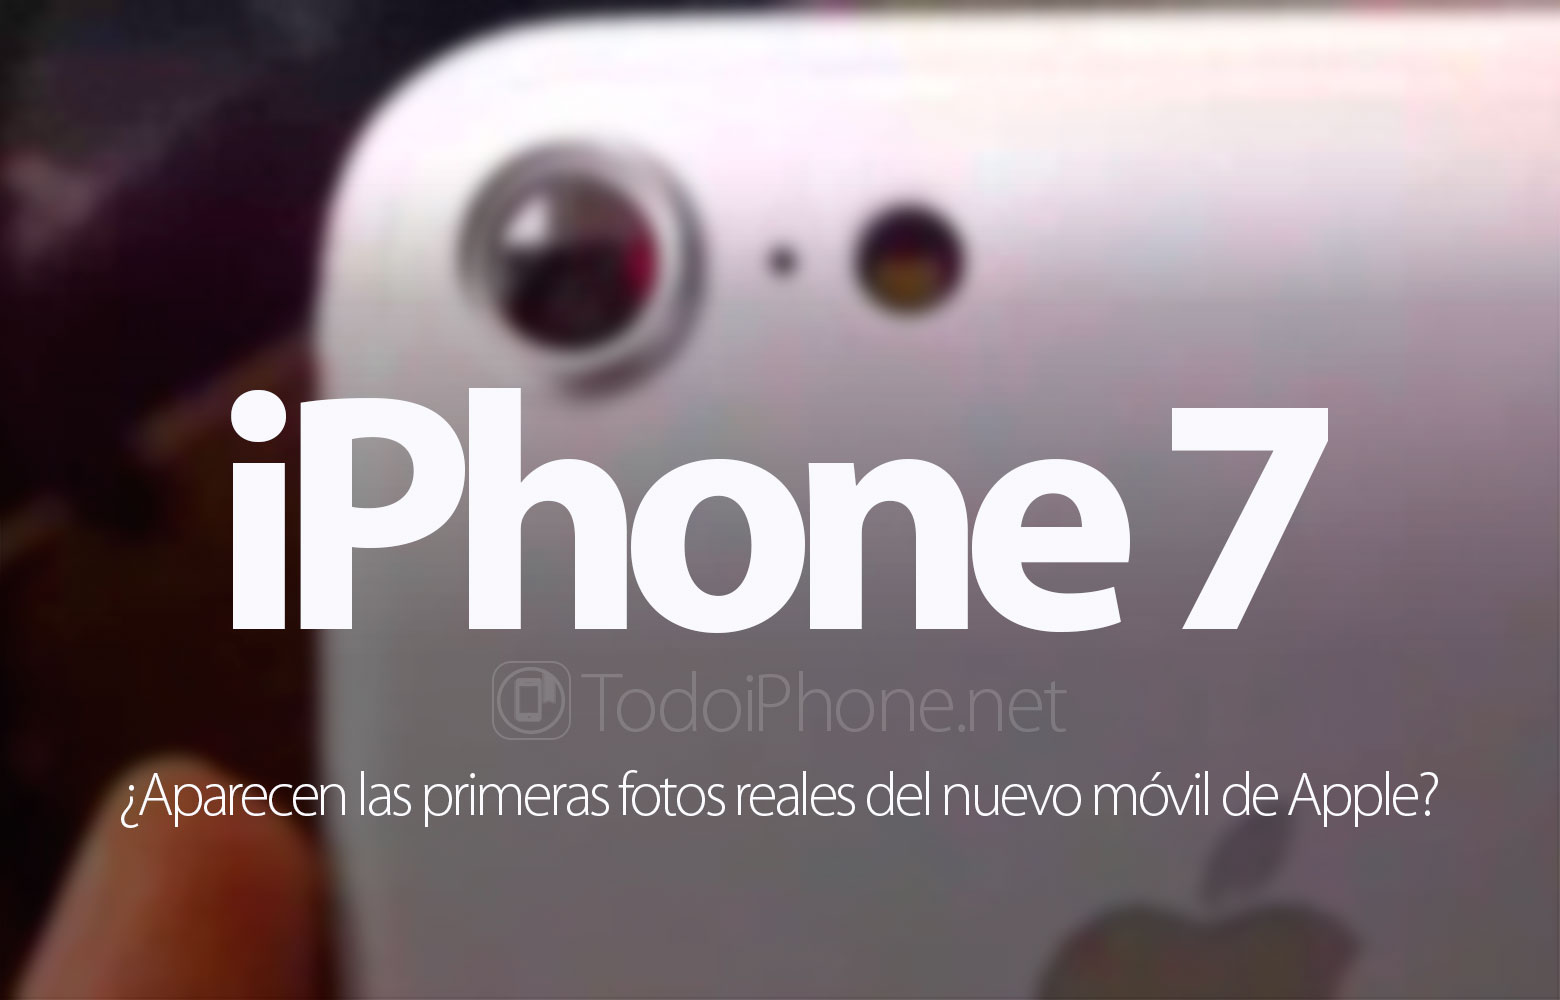 iphone-7-primeras-fotos-reales-nuevo-movil-apple